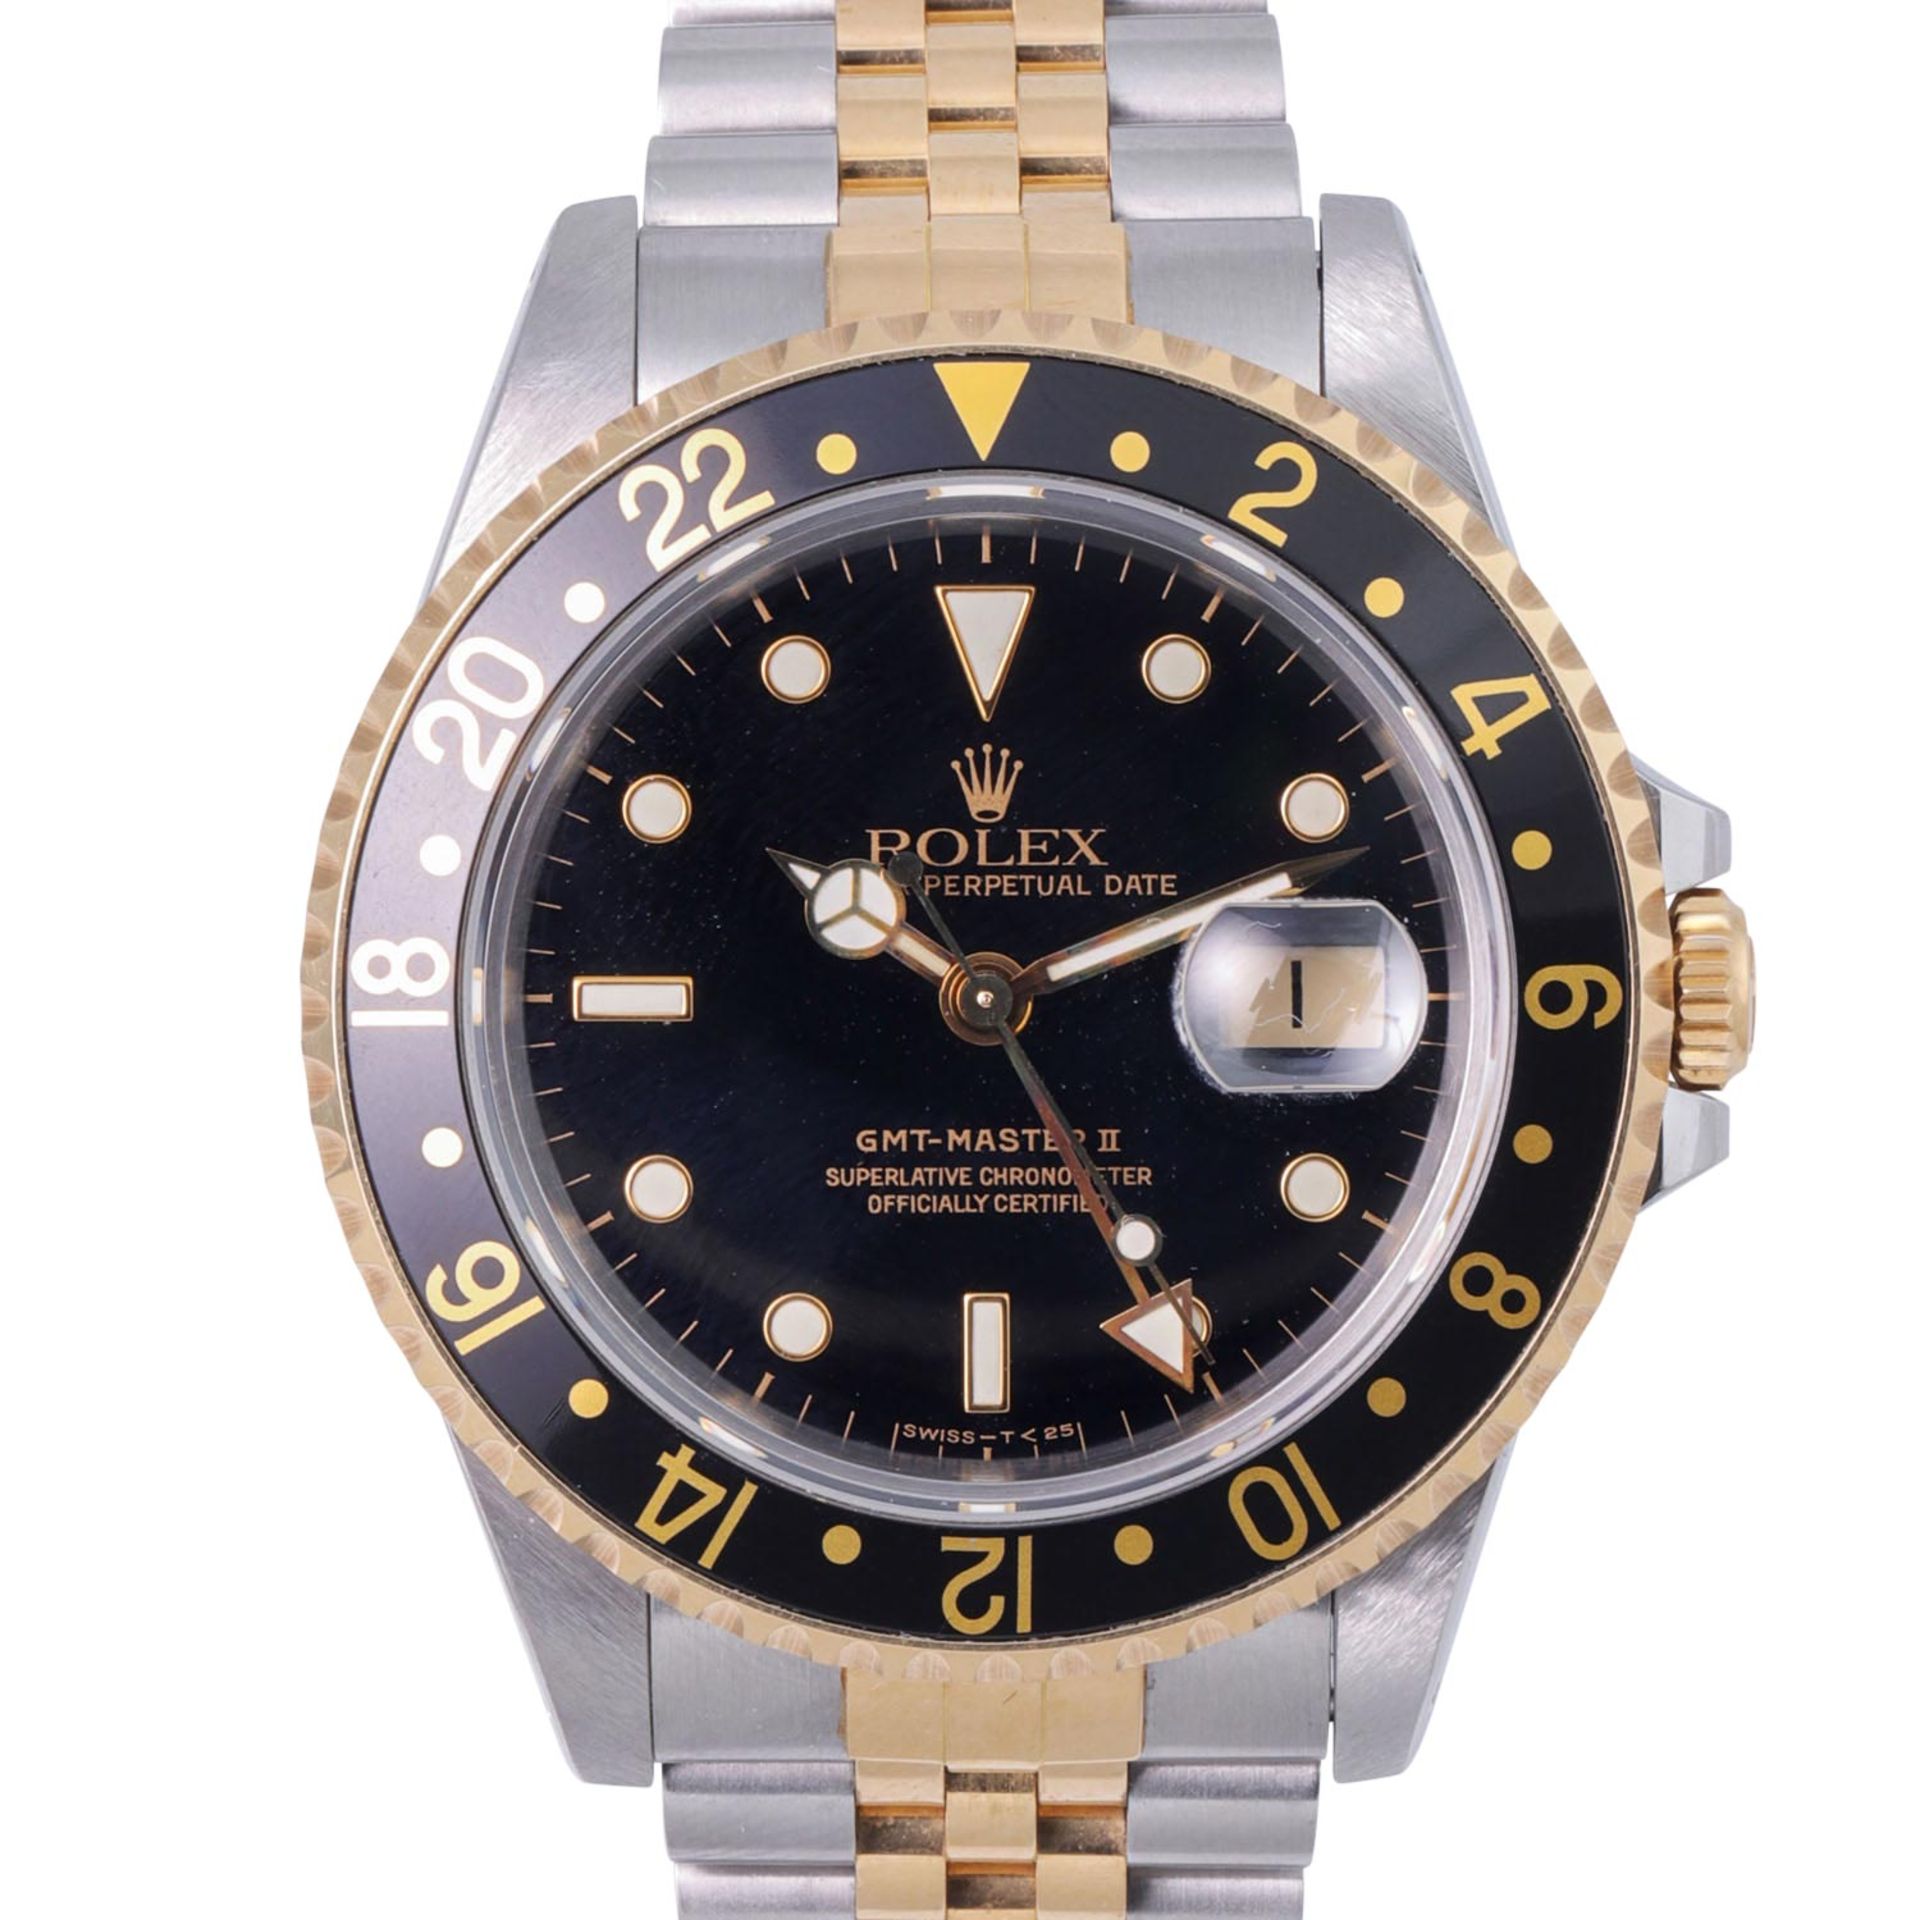 ROLEX Vintage GMT-Master II, Ref. 16713. Herren Armbanduhr aus ca. 1988.